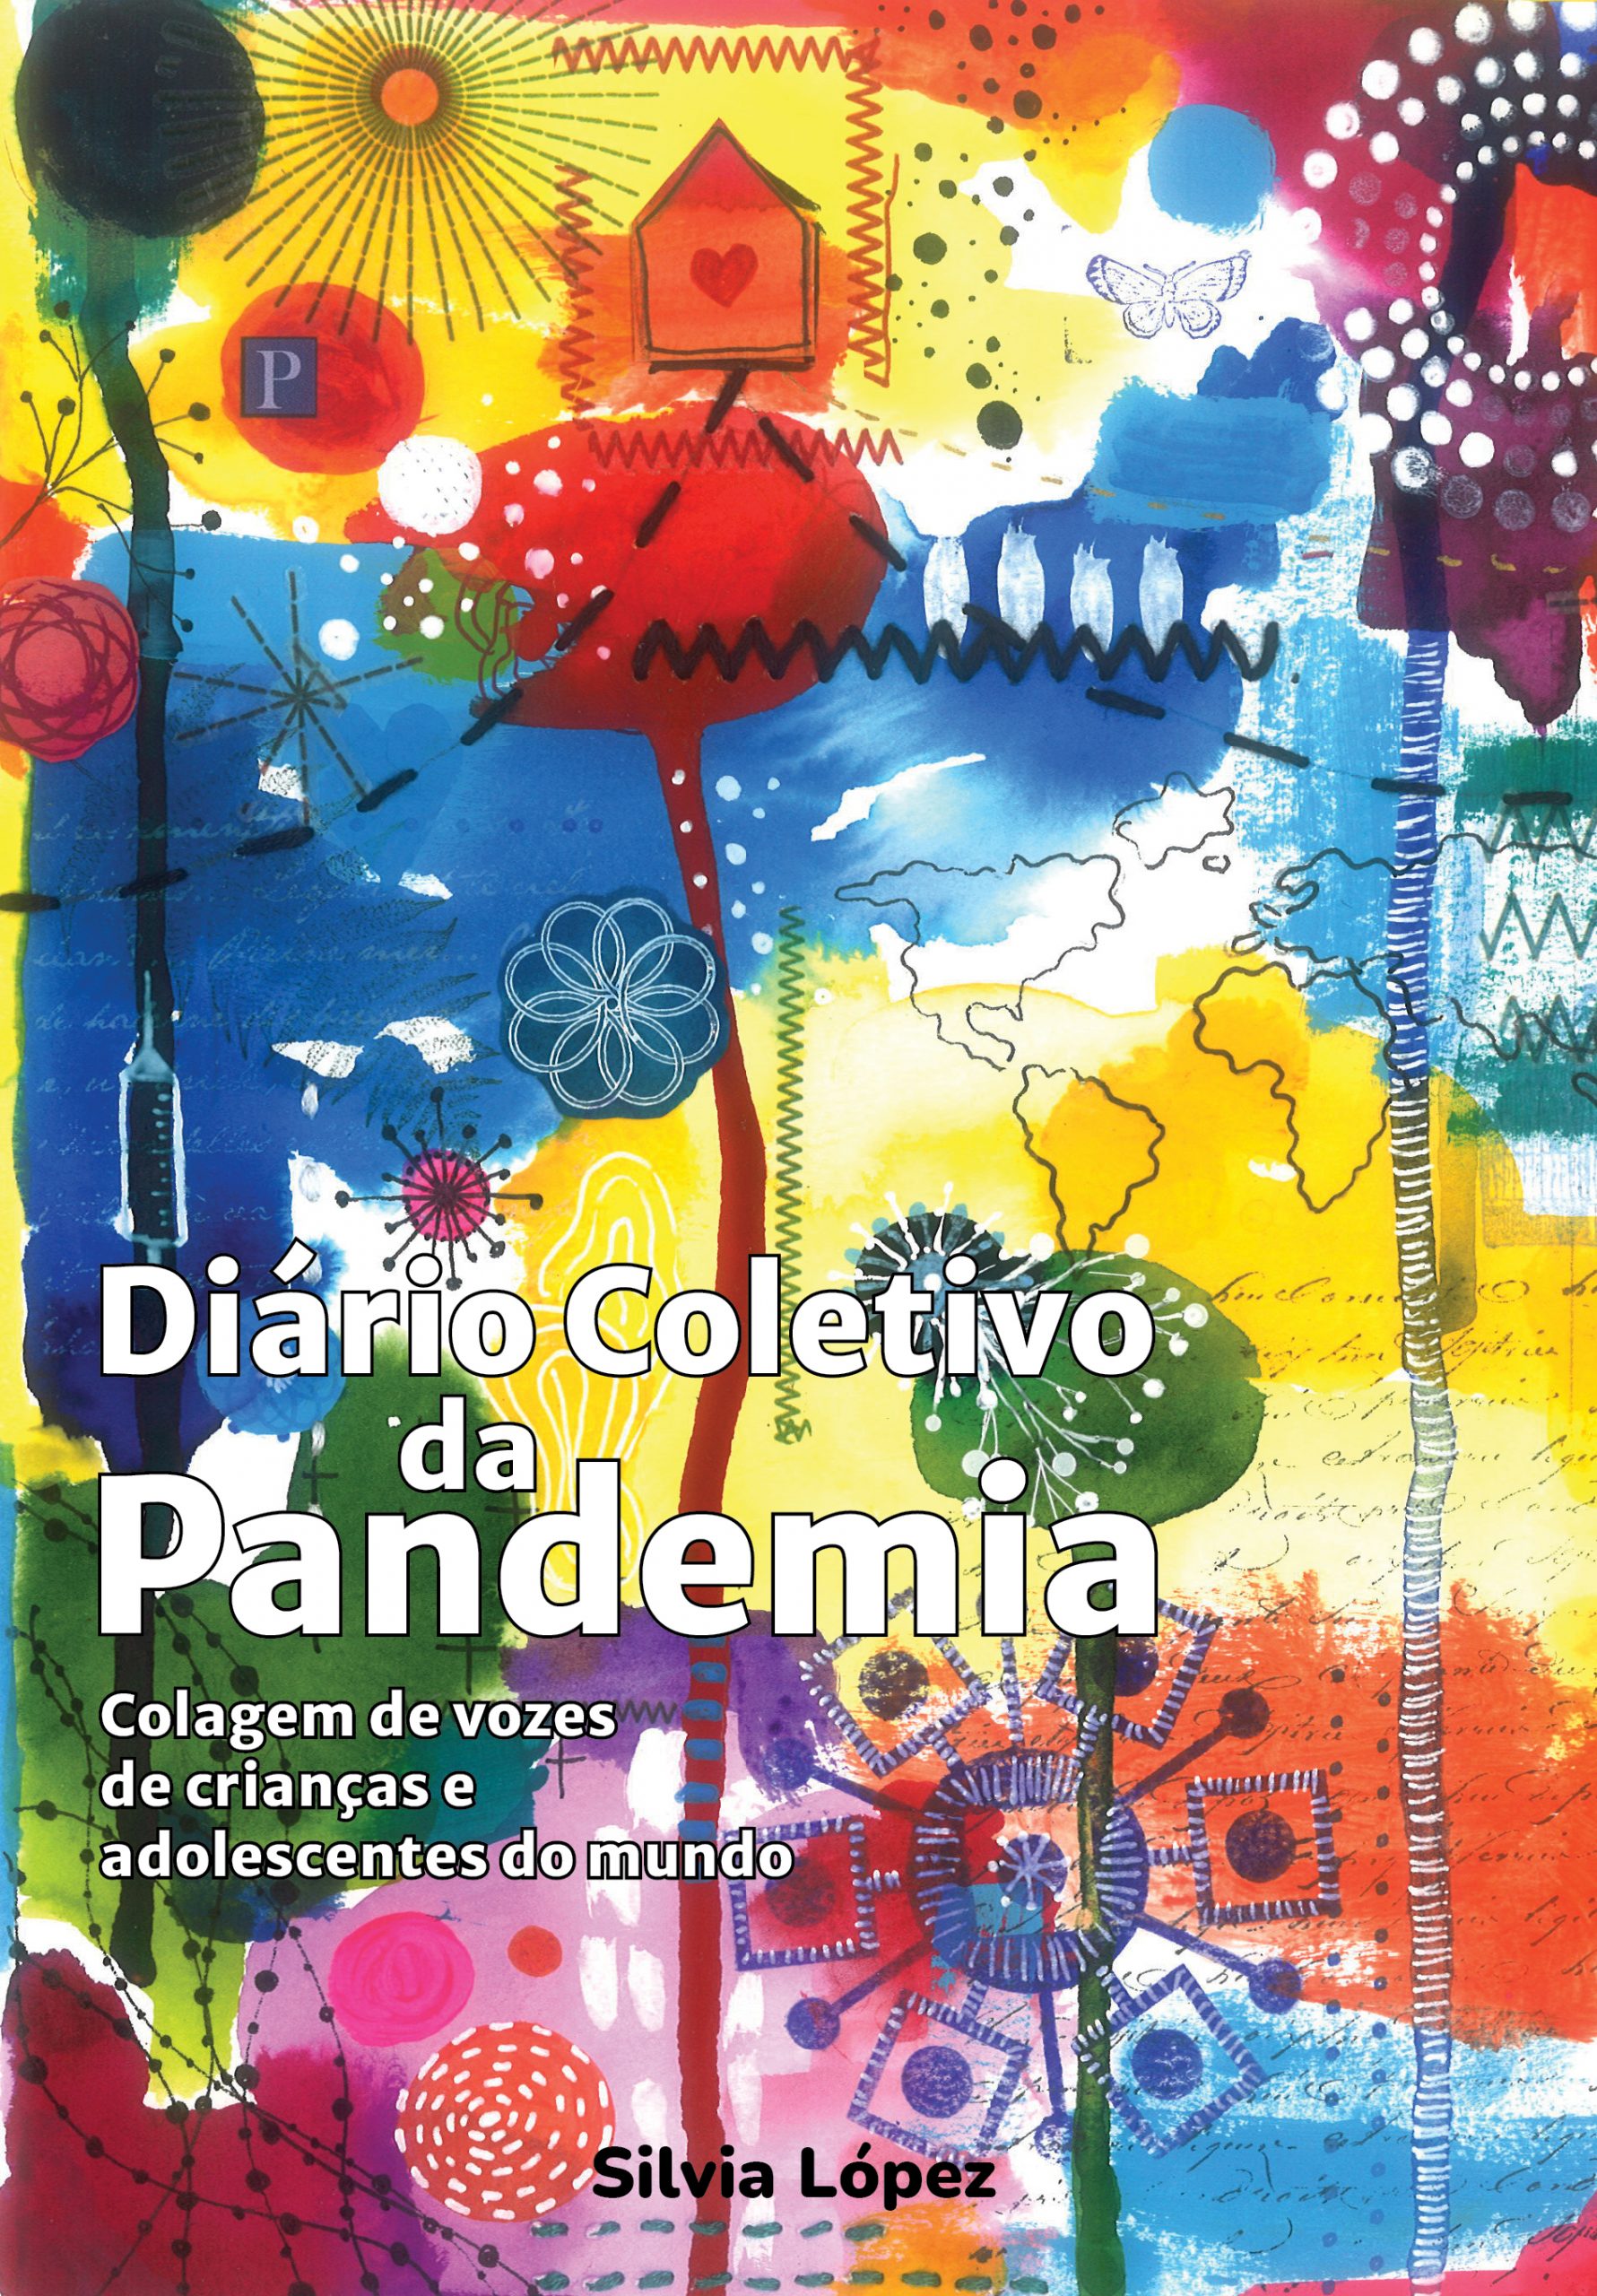 Diario-pandemia_CAPA